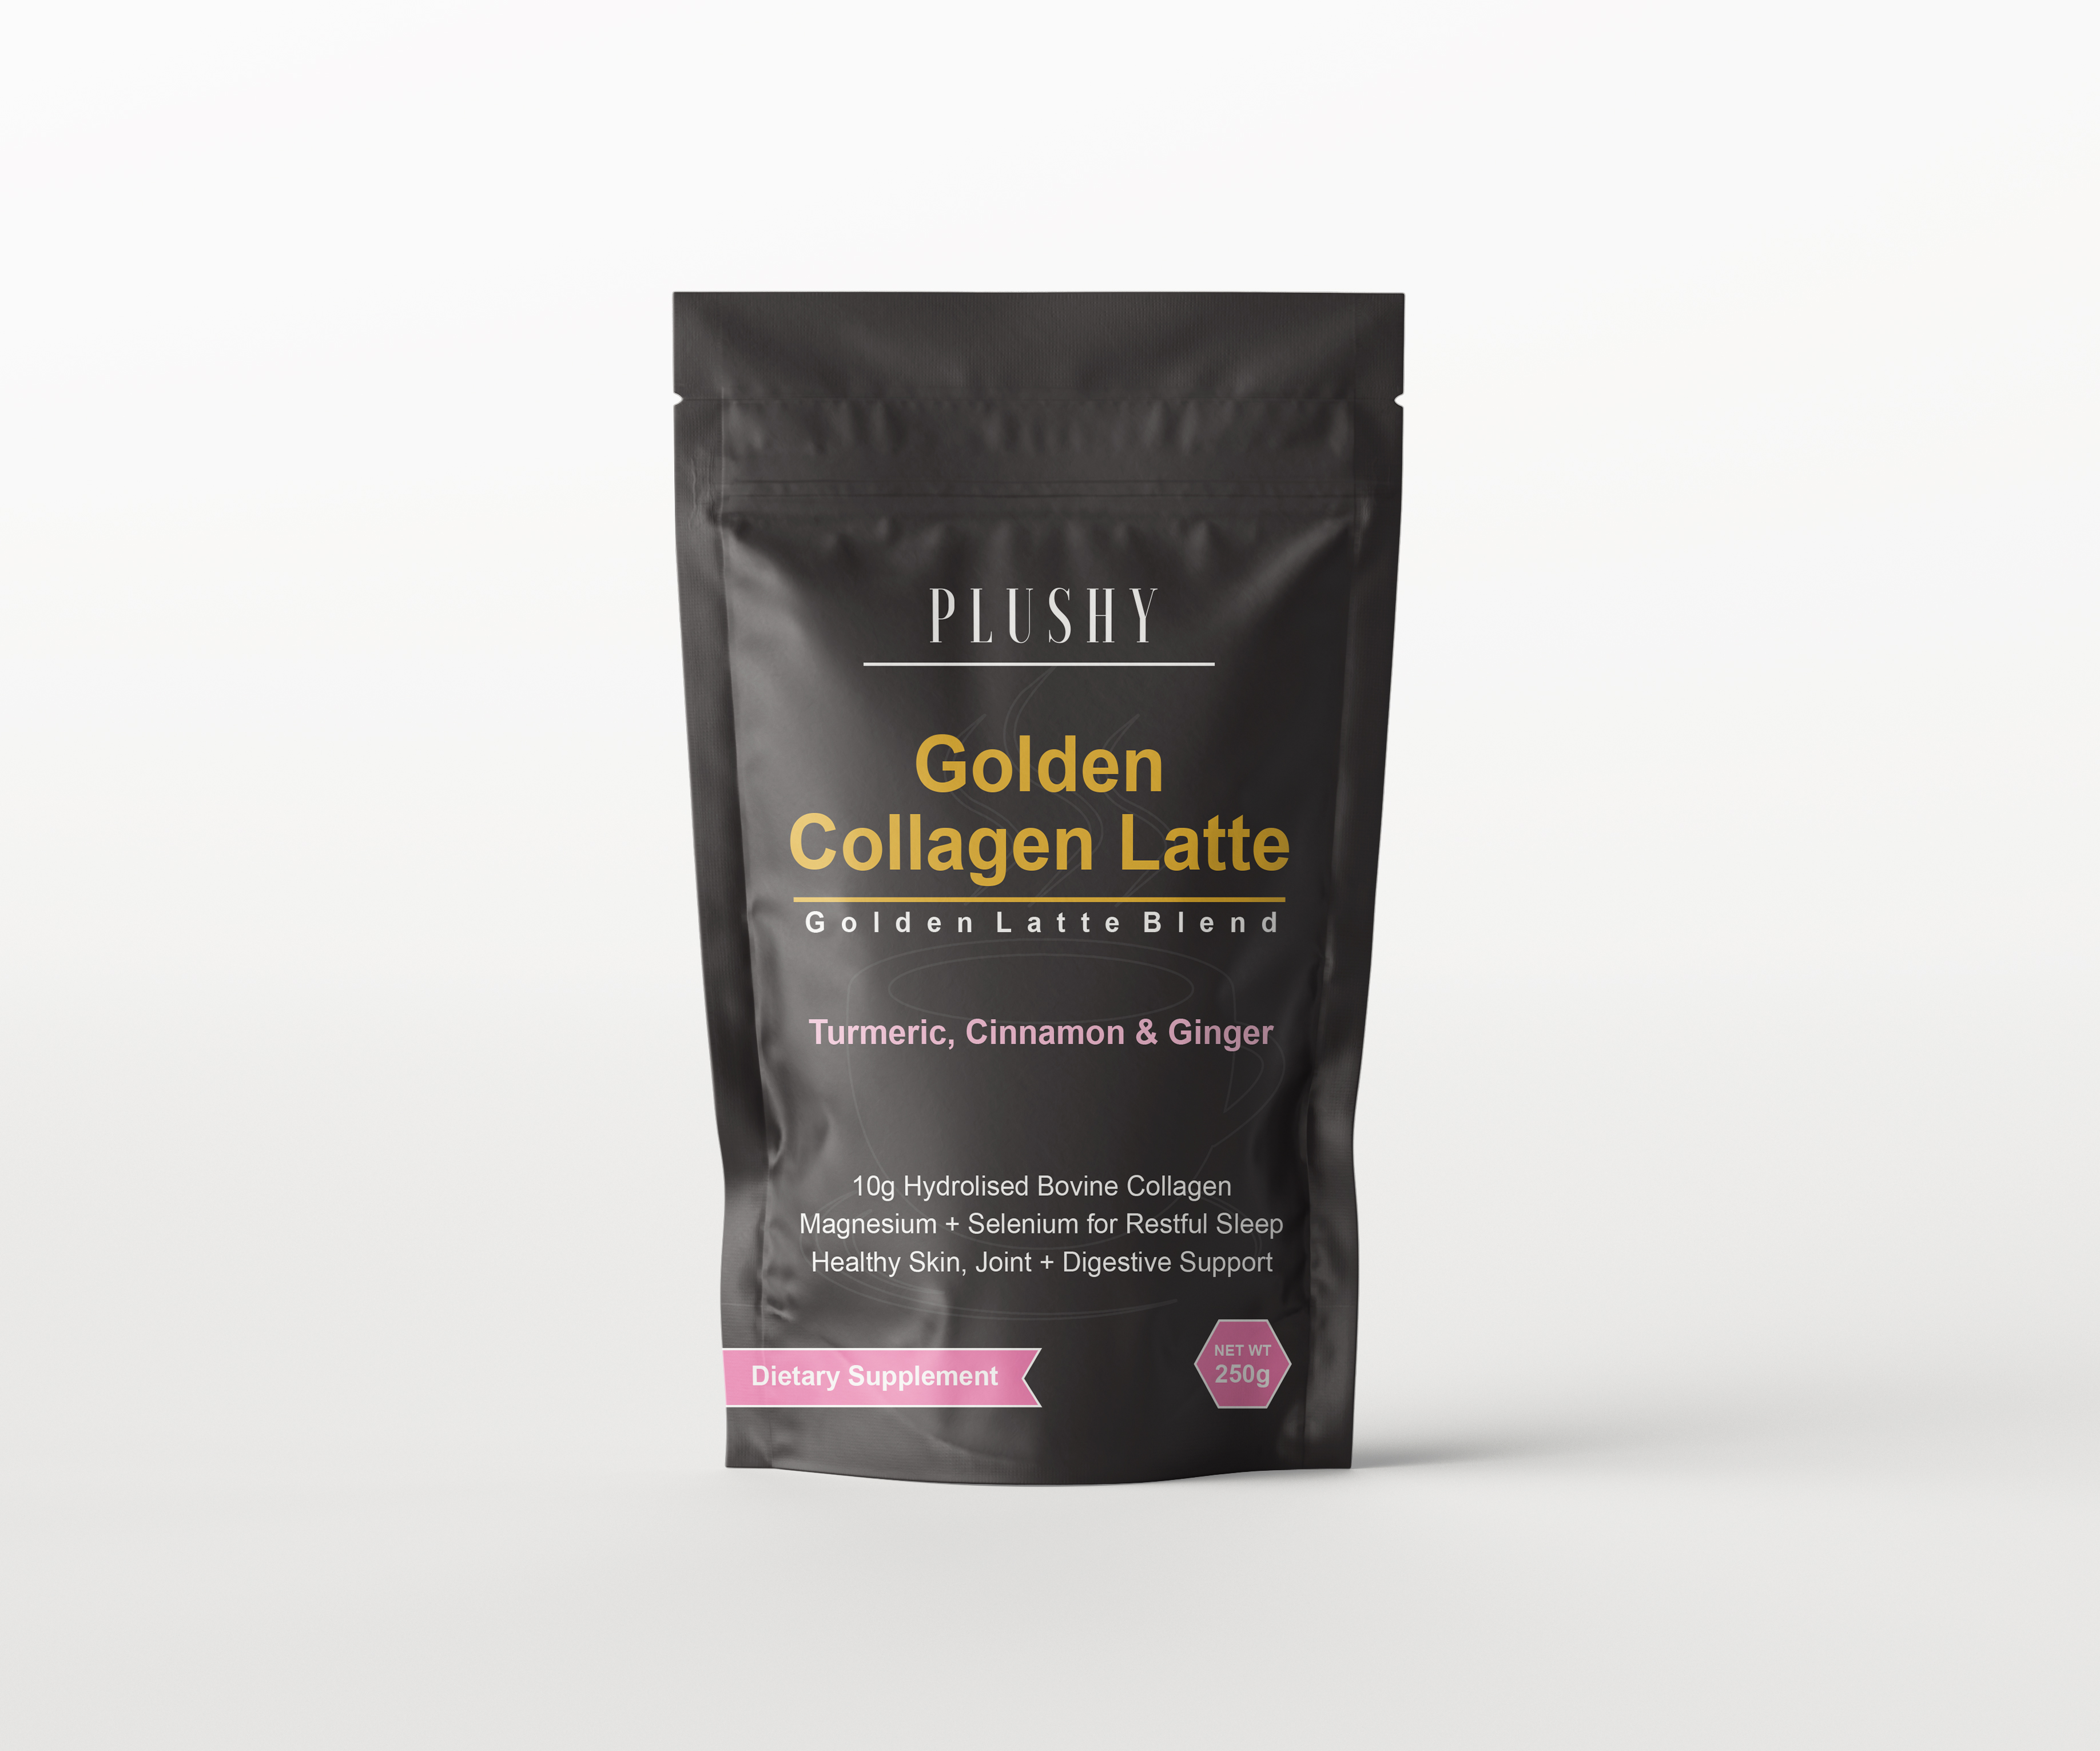 Golden Collagen Latte